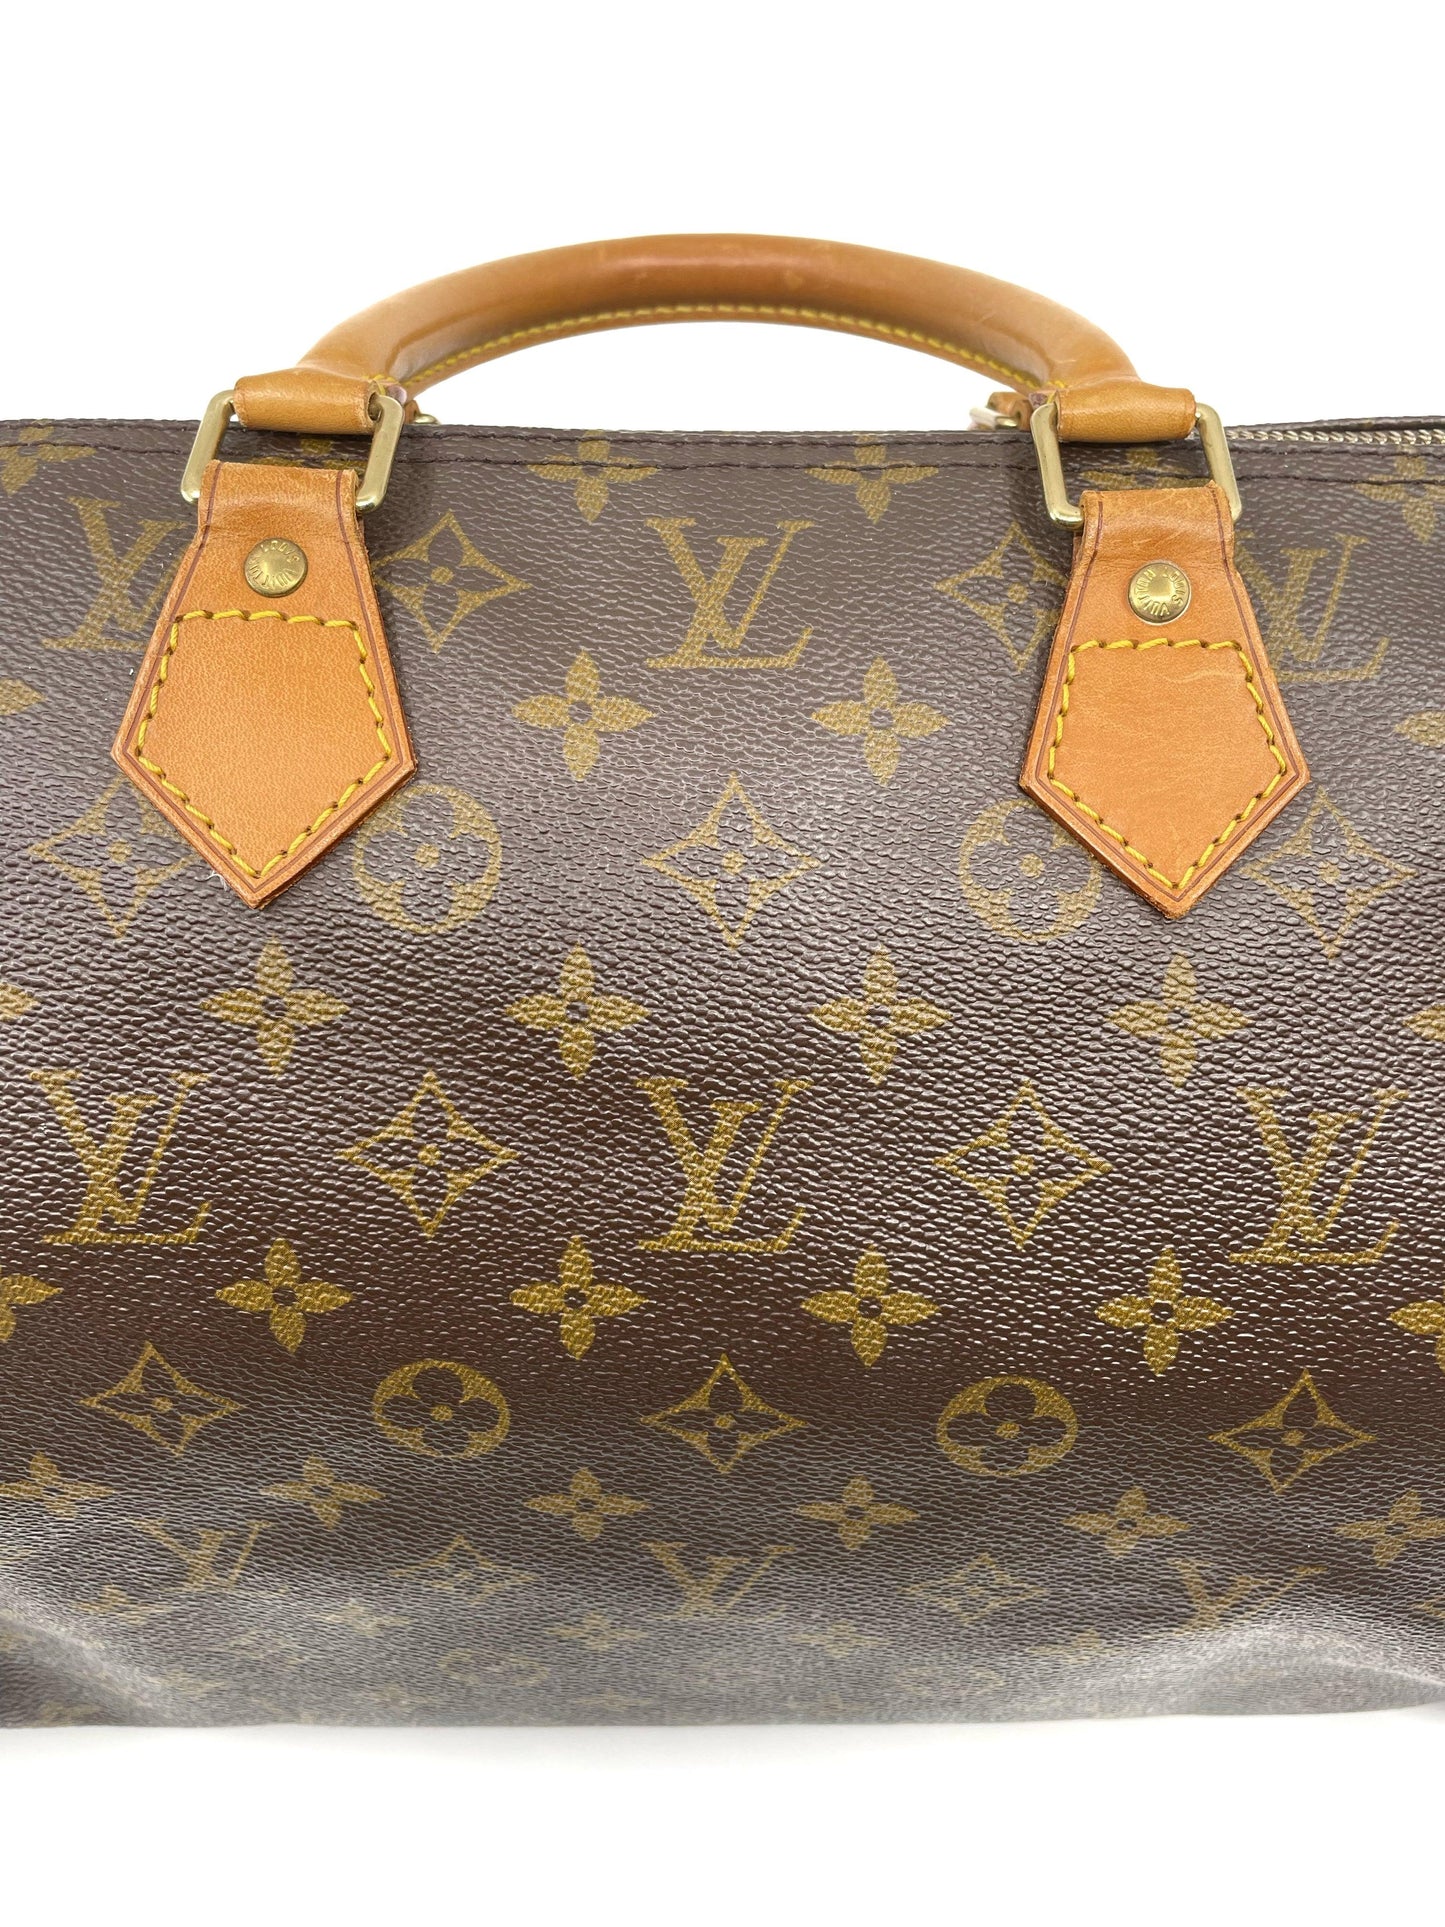 Louis Vuitton Monogram Speedy 40 - THE BAG | COLLECTIVE